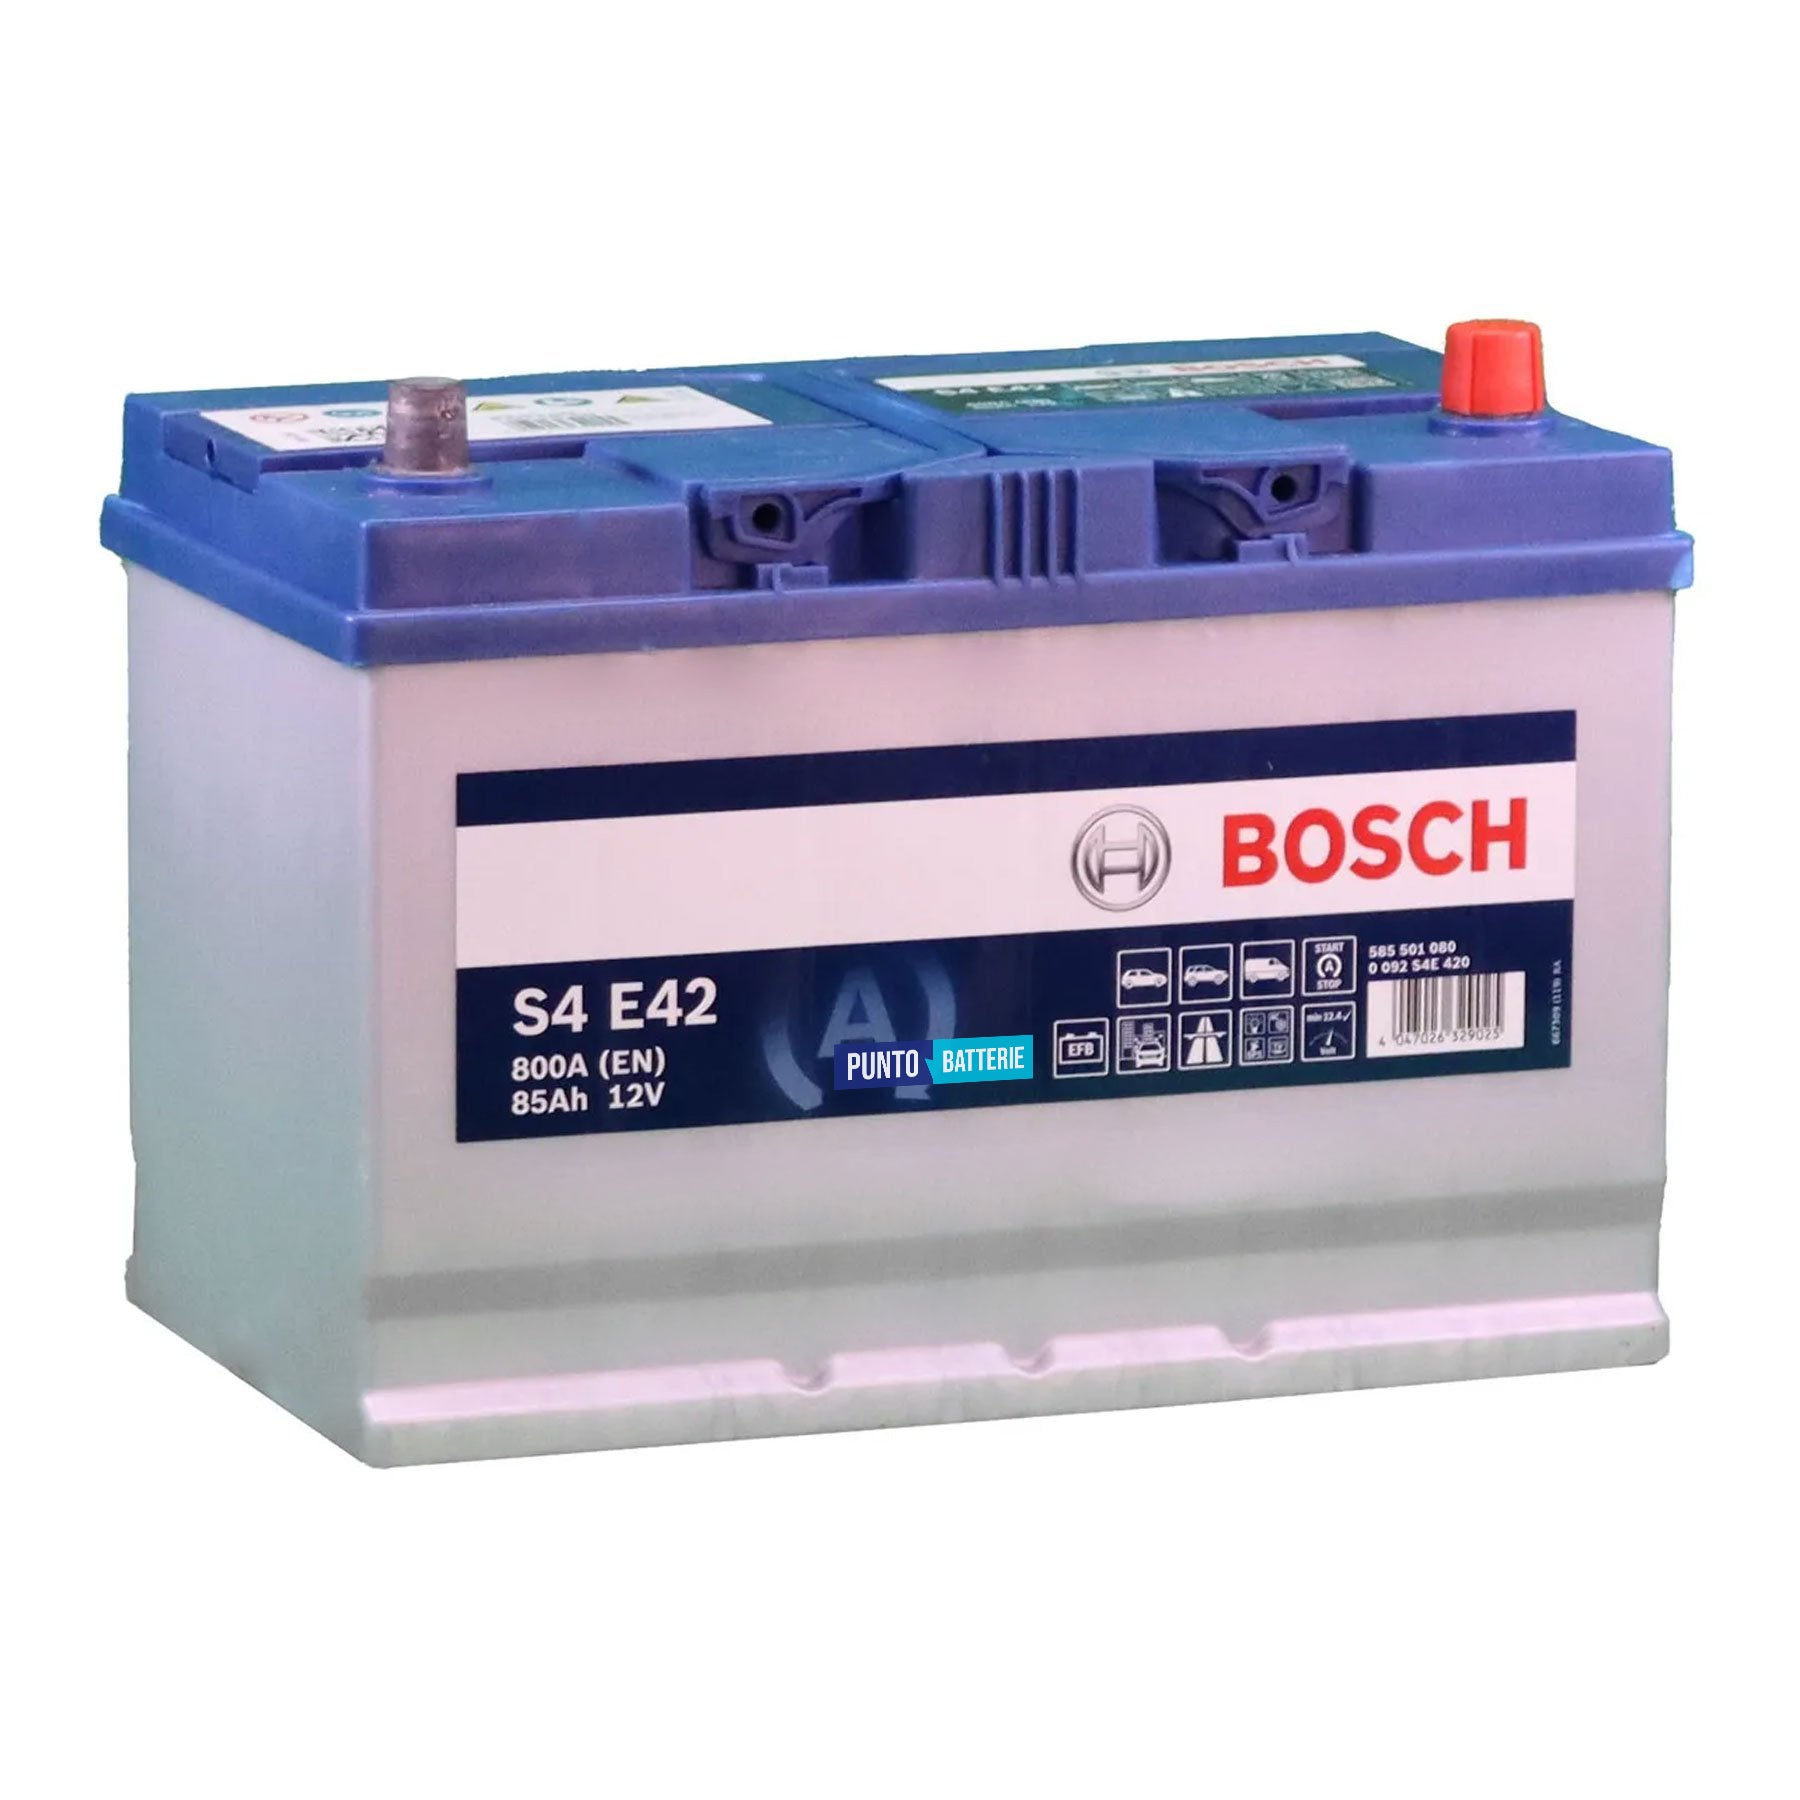 Batteria originale Bosch S4E S4 E42, dimensioni 303.9 x 173 x 218.5, polo positivo a destra, 12 volt, 85 amperora, 800 ampere, EFB. Batteria per auto e veicoli leggeri con start e stop.